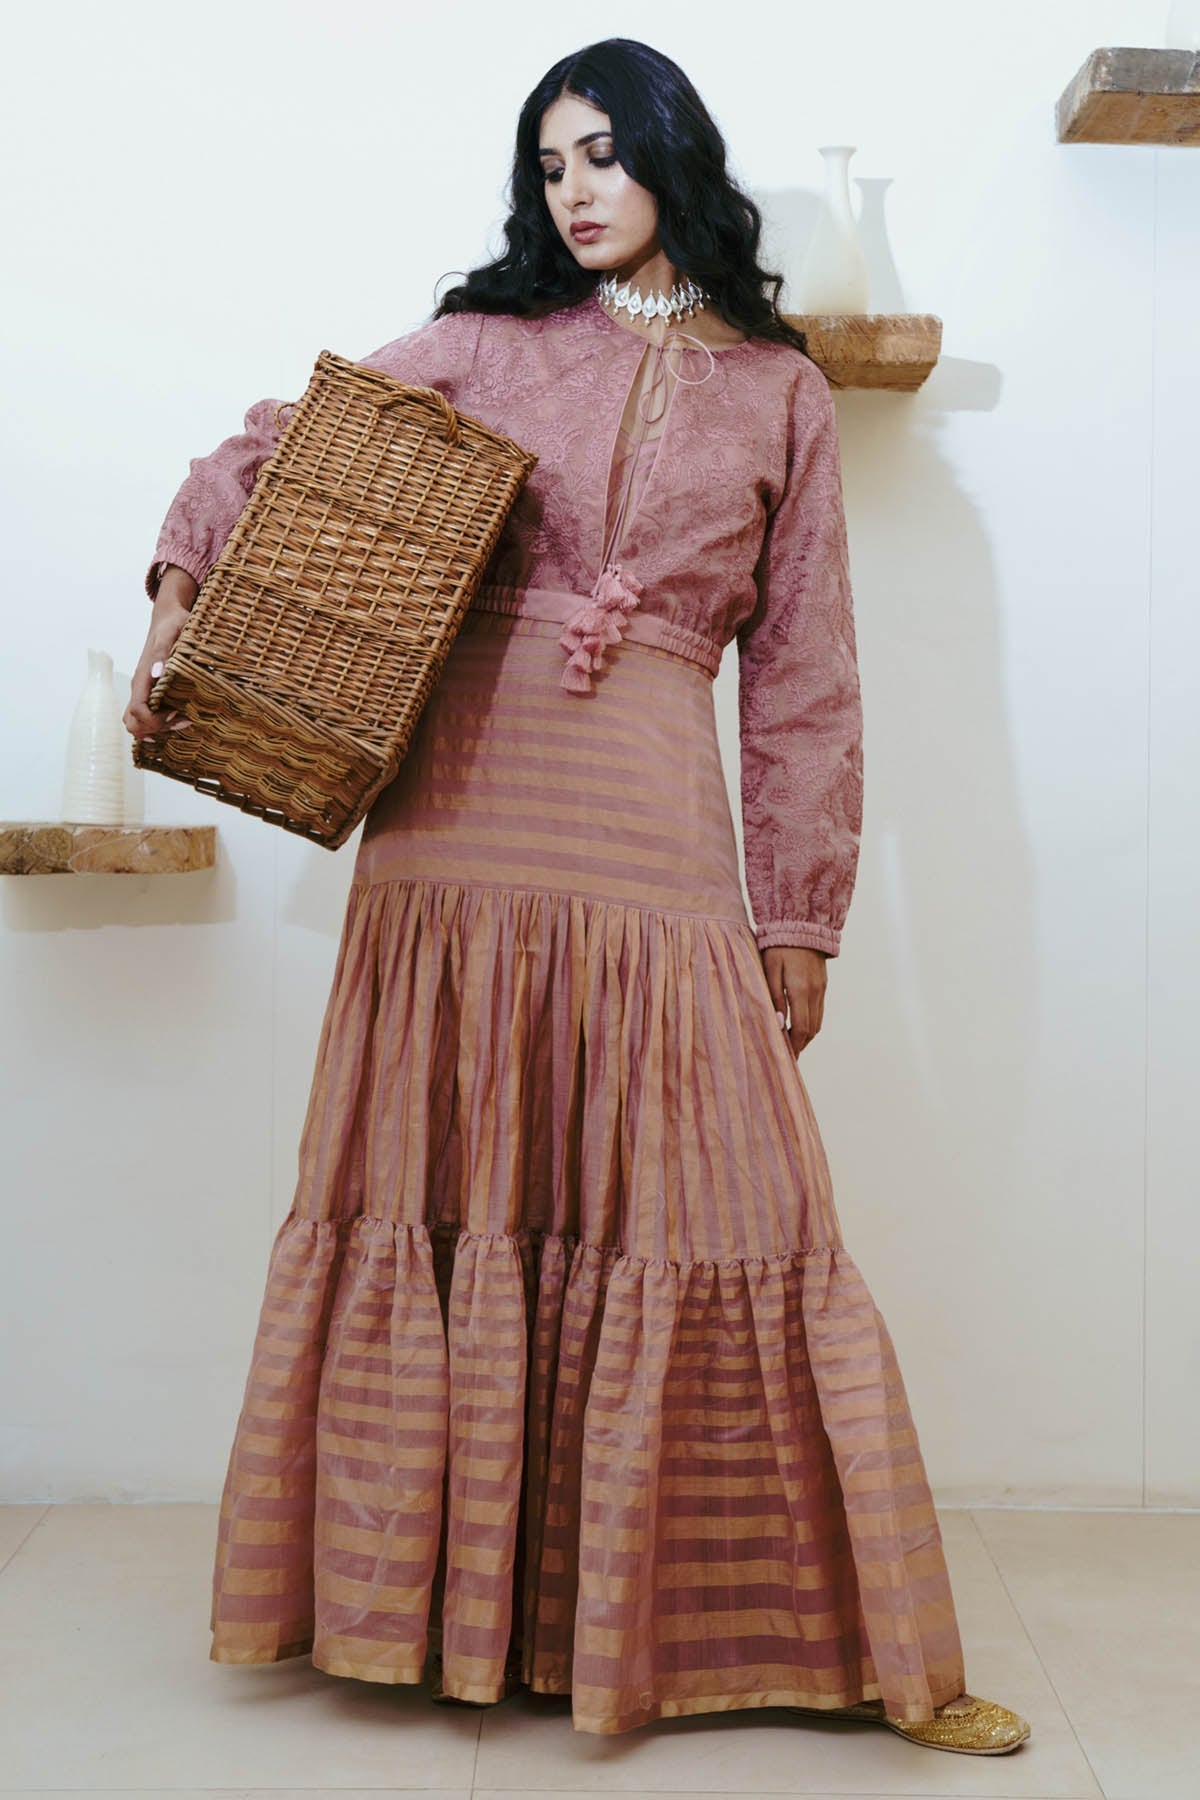 Wabi Sabi Old Rose Anarkali & Jacket Set For Women available at ScrollnShops